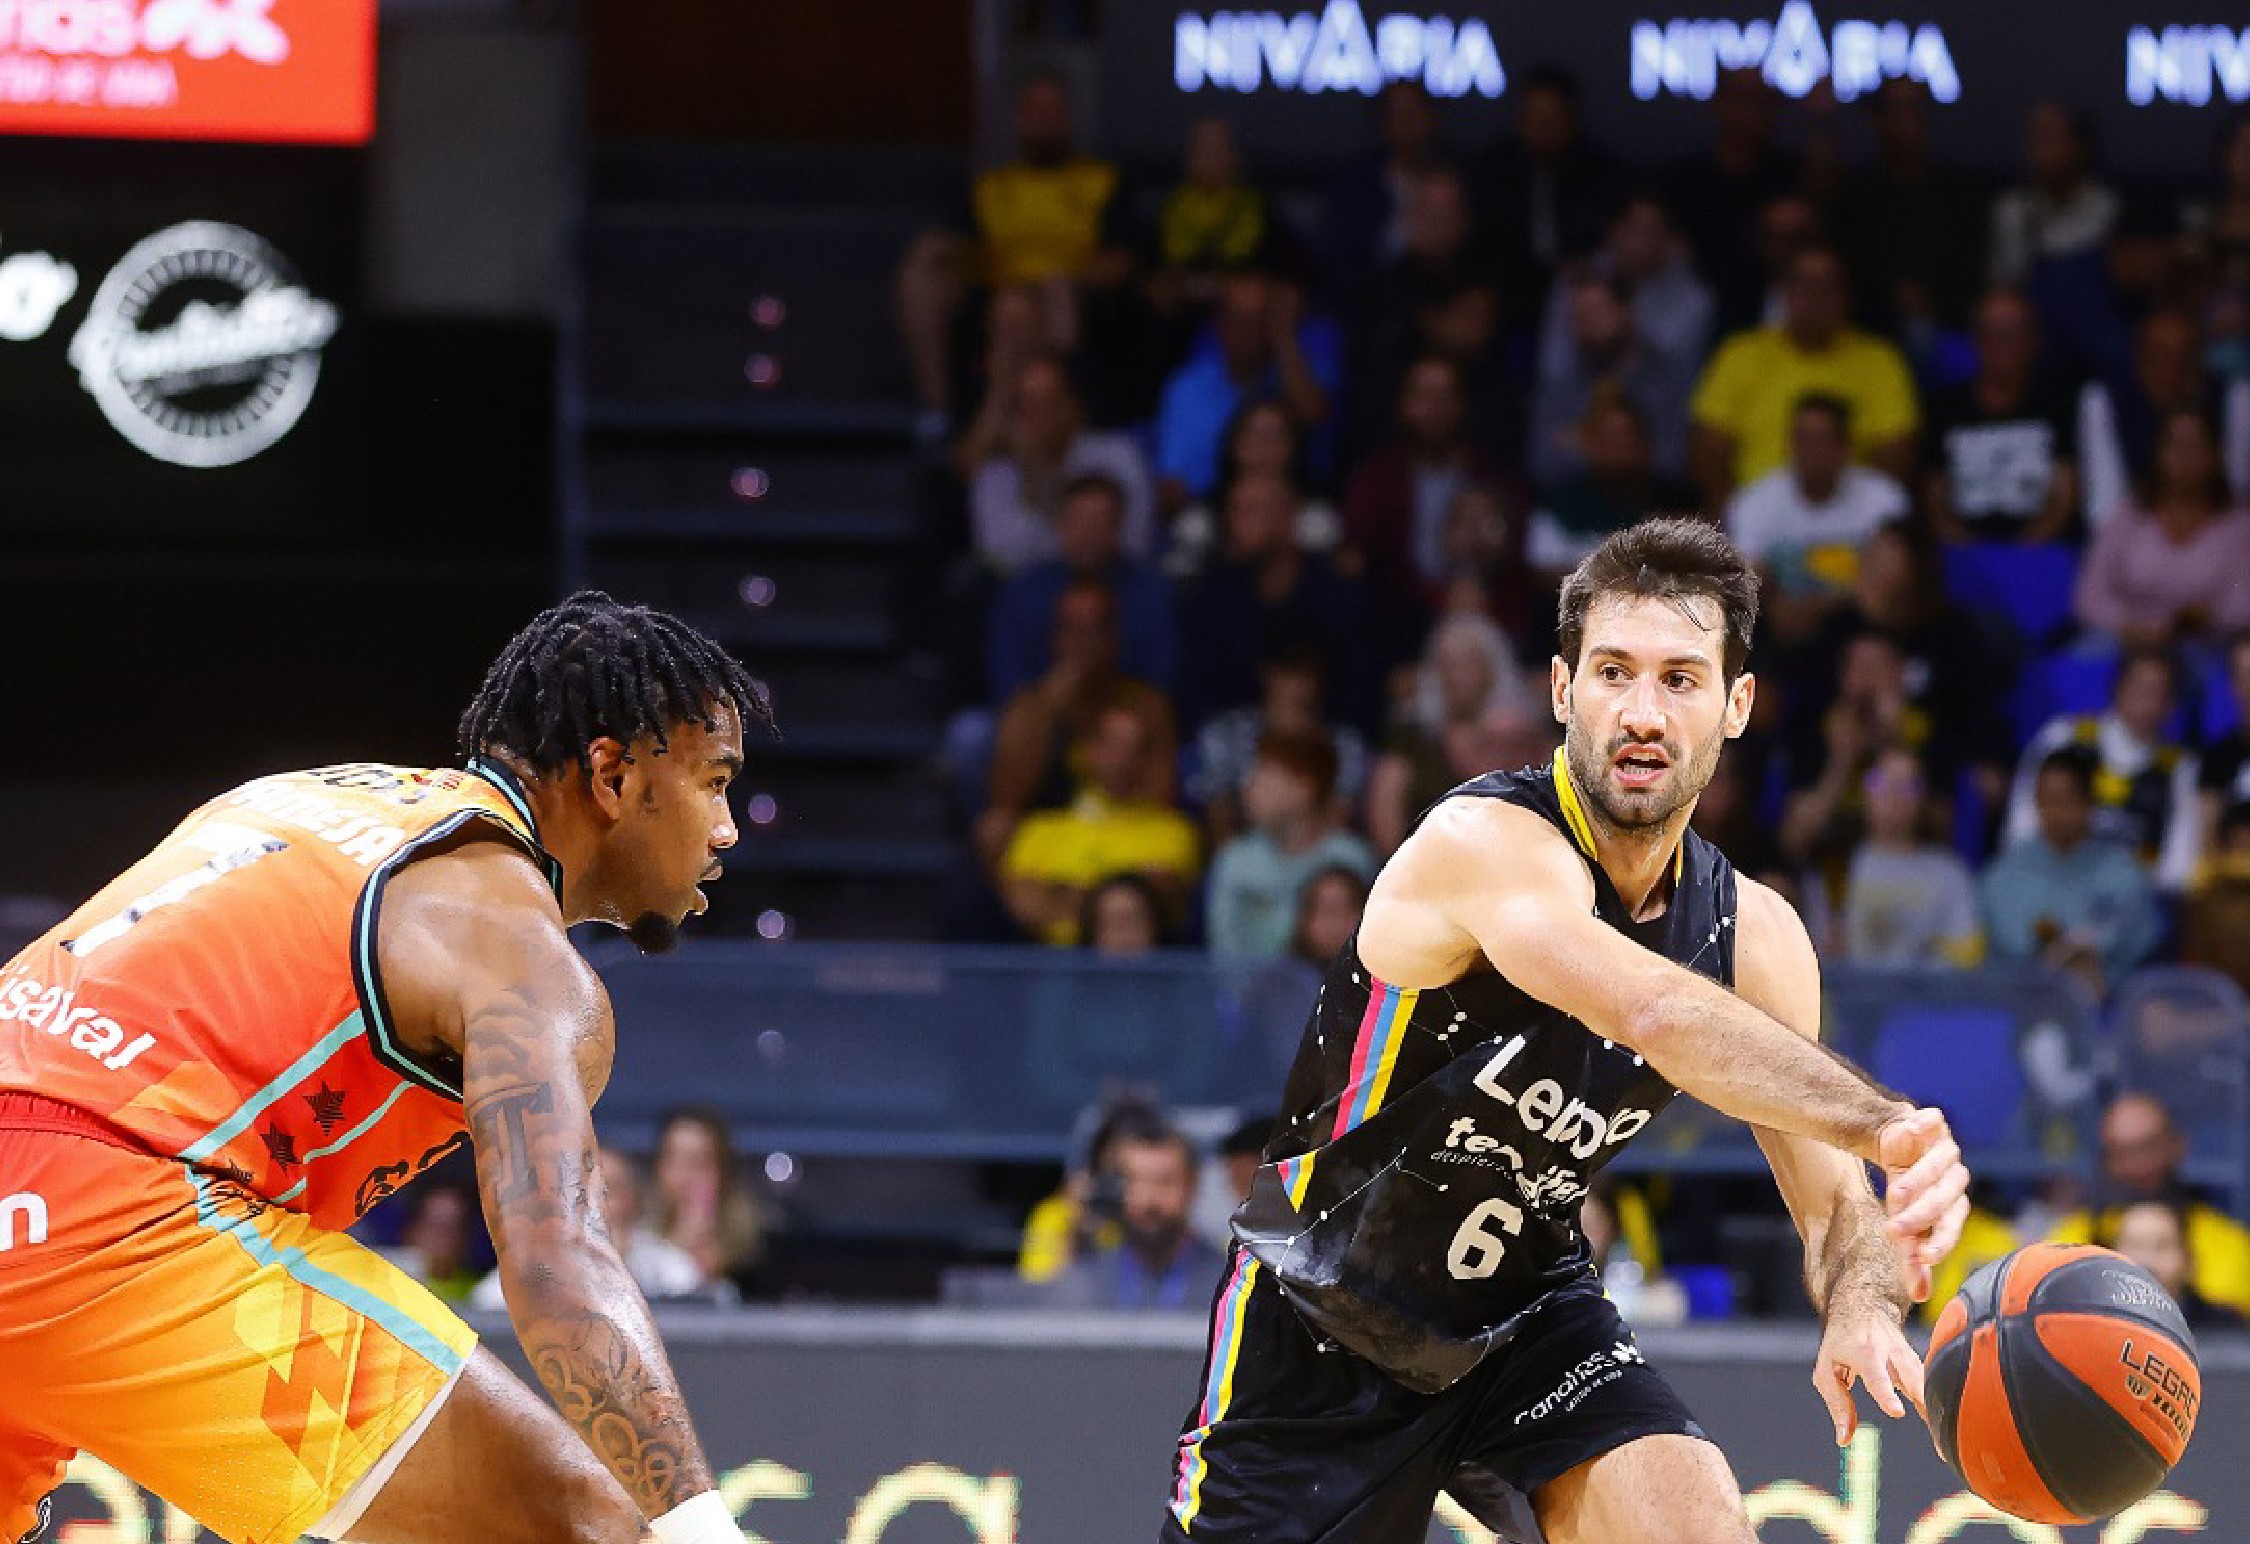 Crónica del CB Canarias 94-78 Valencia Basket: "Enorme victoria de un Lenovo Tenerife imparable en este comienzo de curso"